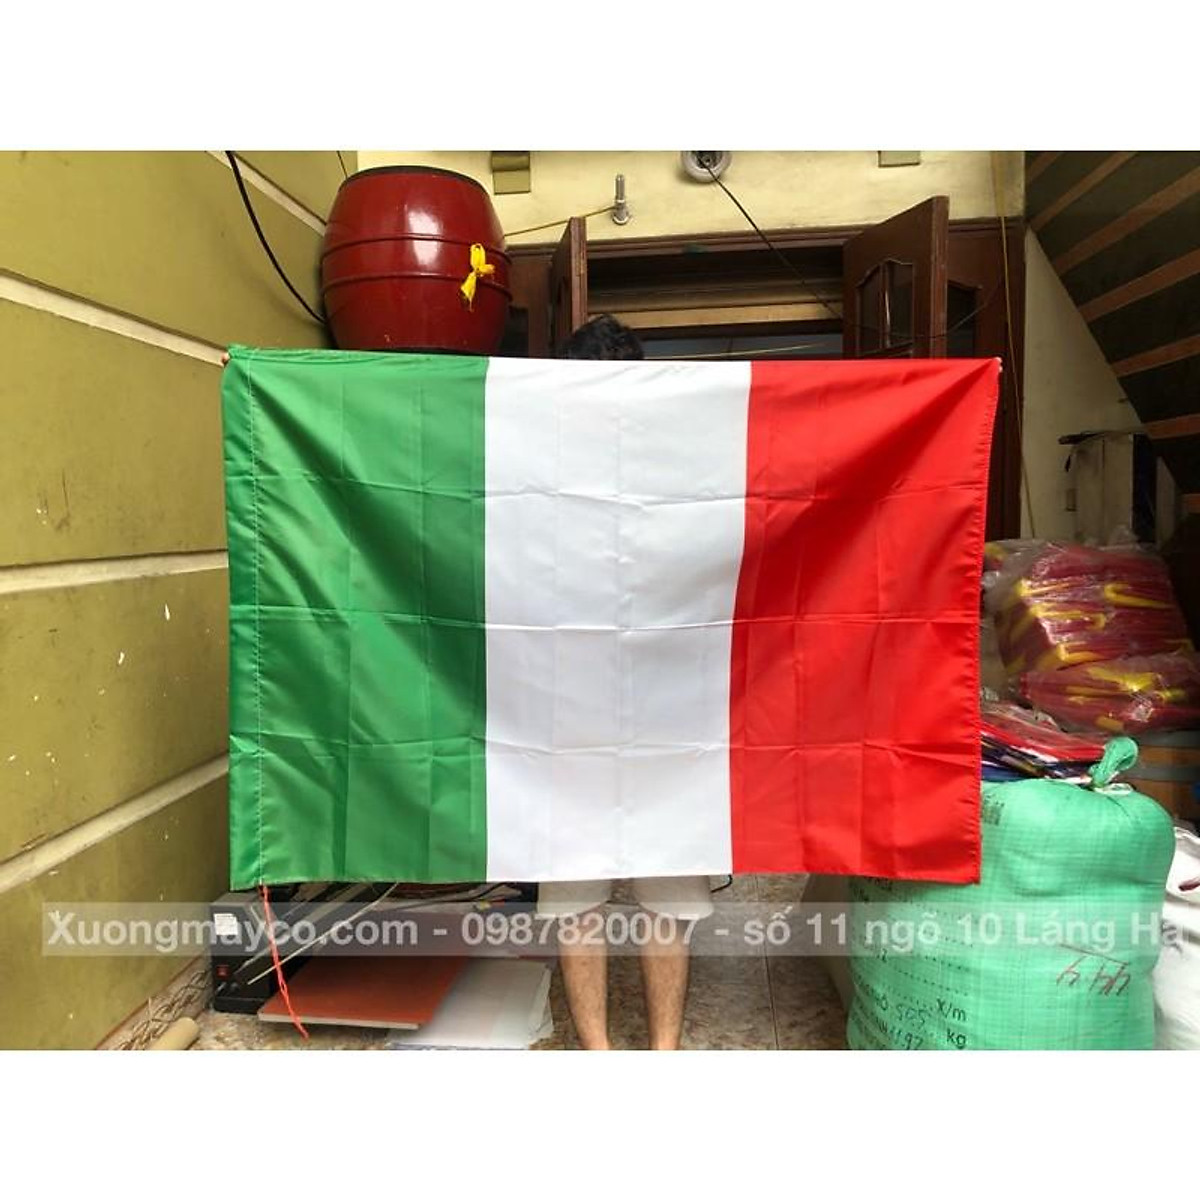 In cờ Italia: Cờ Italia với màu sắc đỏ, trắng và xanh lam là biểu tượng của đất nước này. Năm 2024, những hình ảnh đẹp về cờ Italia sẽ được cập nhật và chia sẻ. Hãy đến với những hình ảnh đẹp về cờ Italia và cảm nhận sự tự hào và tình yêu đối với đất nước này.